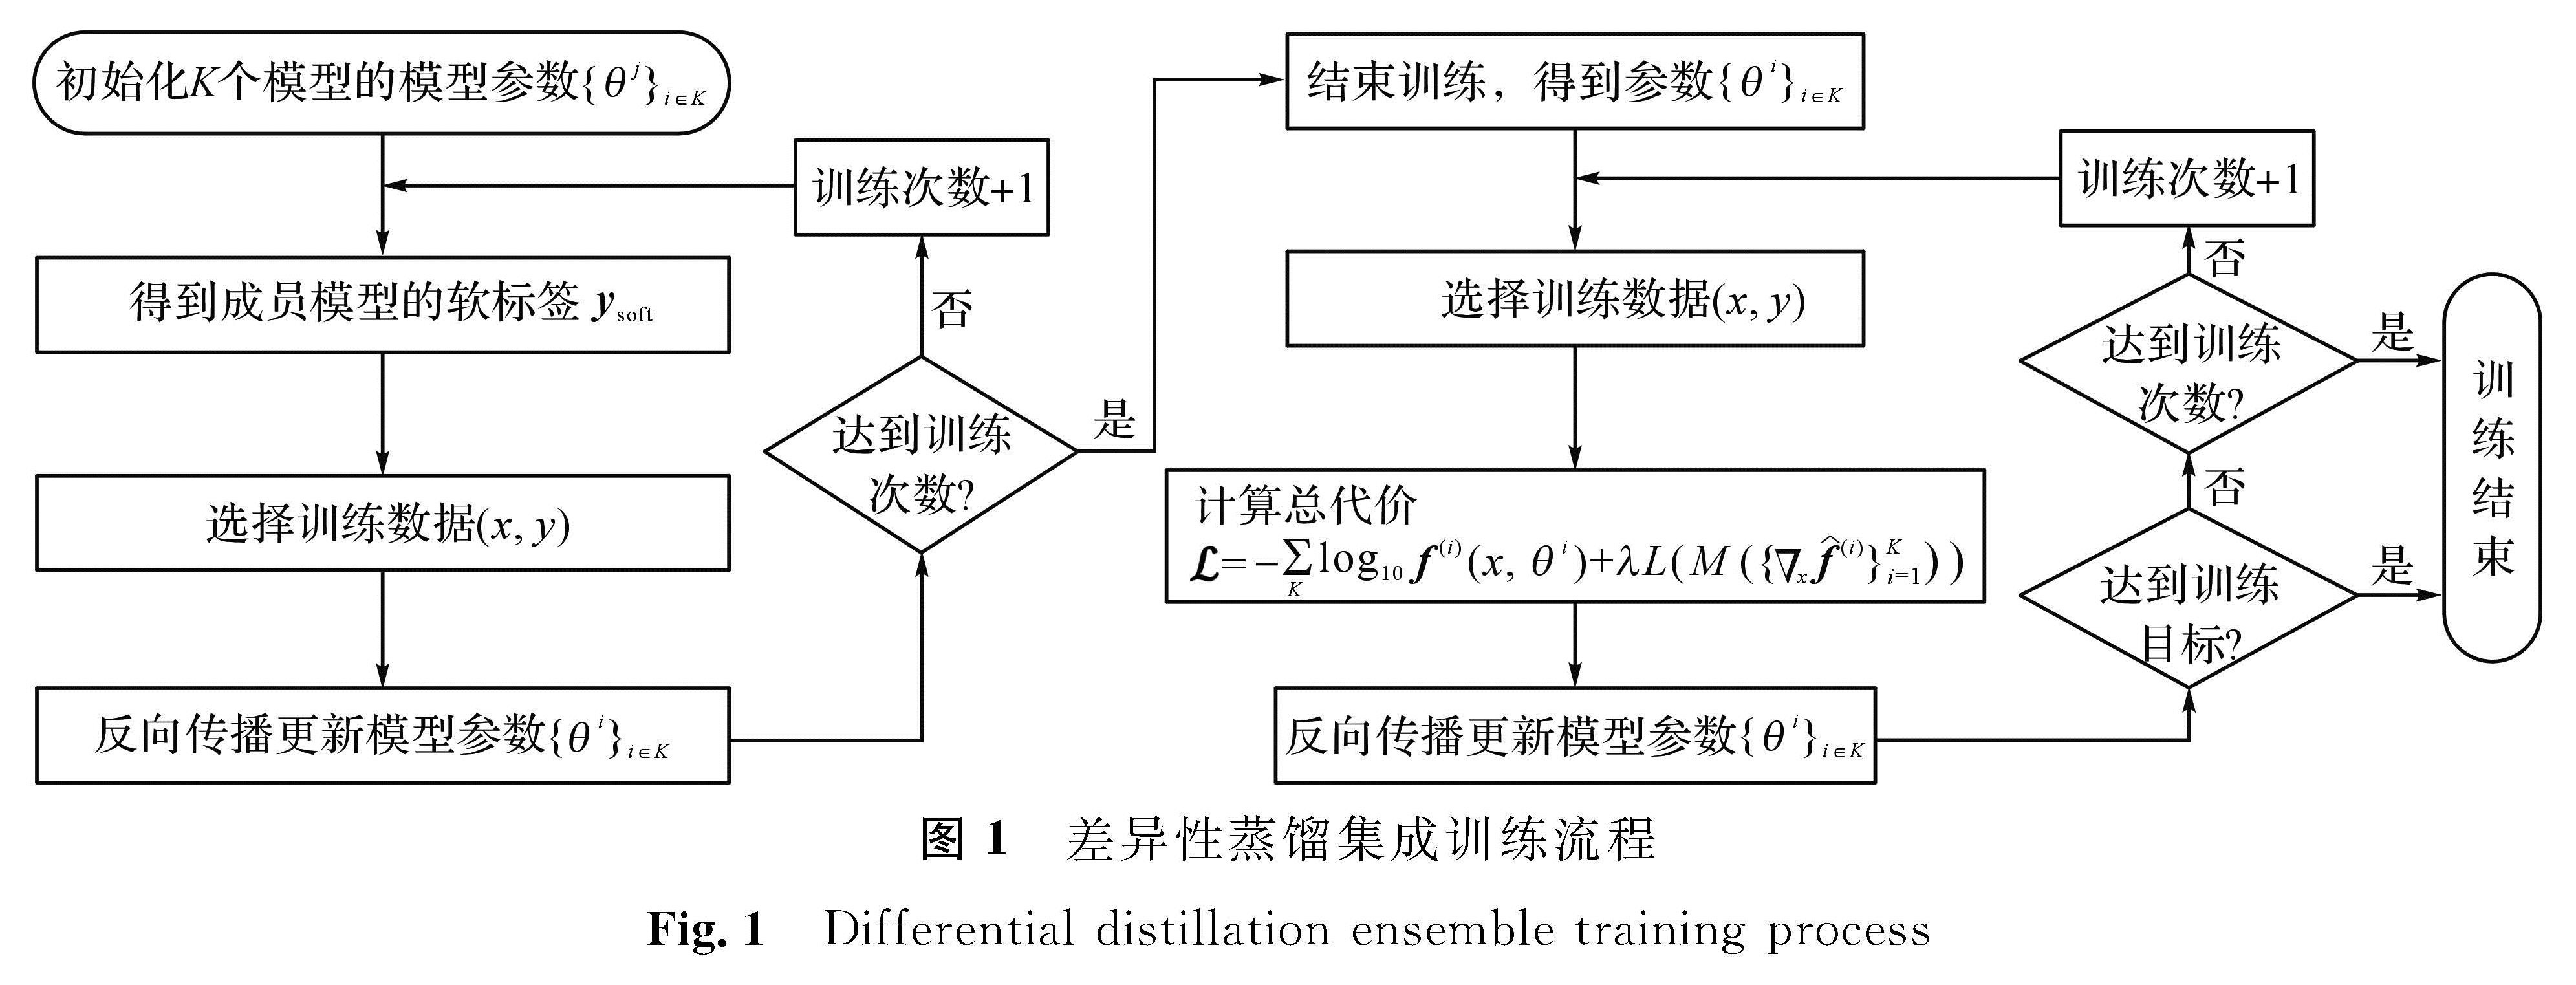 图1 差异性蒸馏集成训练流程<br/>Fig.1 Differential distillation ensemble training process